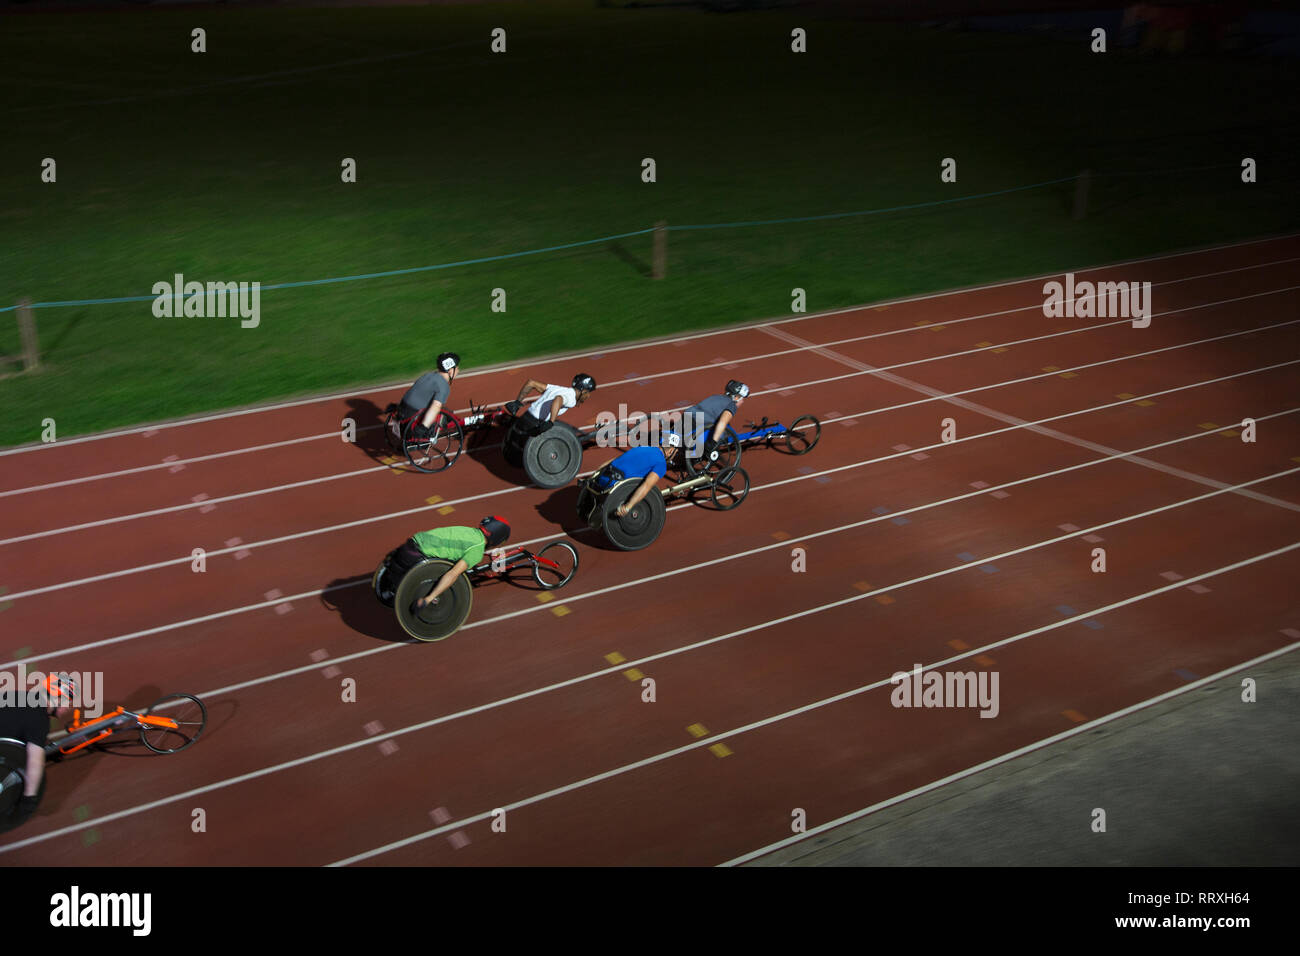 Querschnittsgelähmte Sportler Beschleunigung zusammen Sport Track im Rollstuhl Rennen bei Nacht Stockfoto